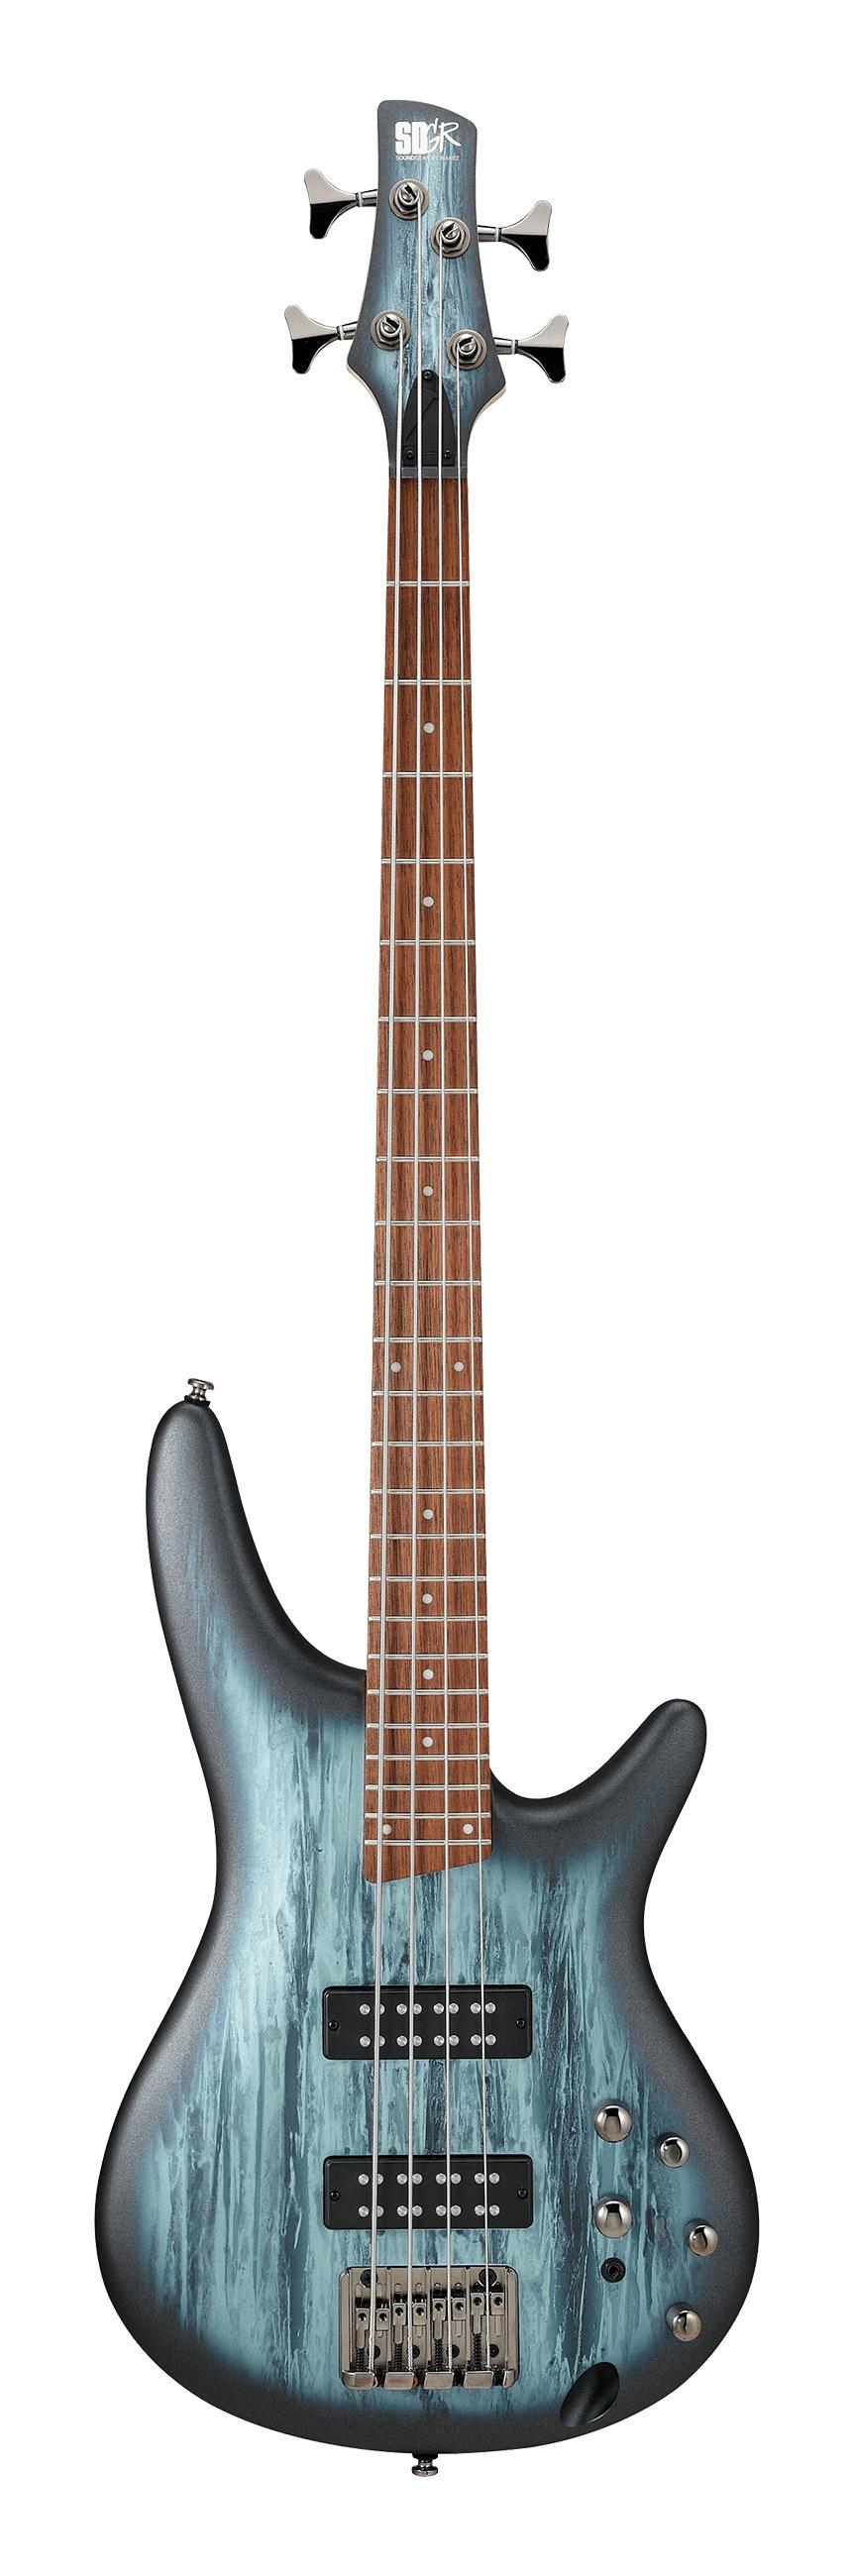 Бас-гитары Ibanez SR300E-SVM штанга 62 кг гриф с посадочным диаметром 25 5 мм 2 замка гайки 2 гантельных грифа